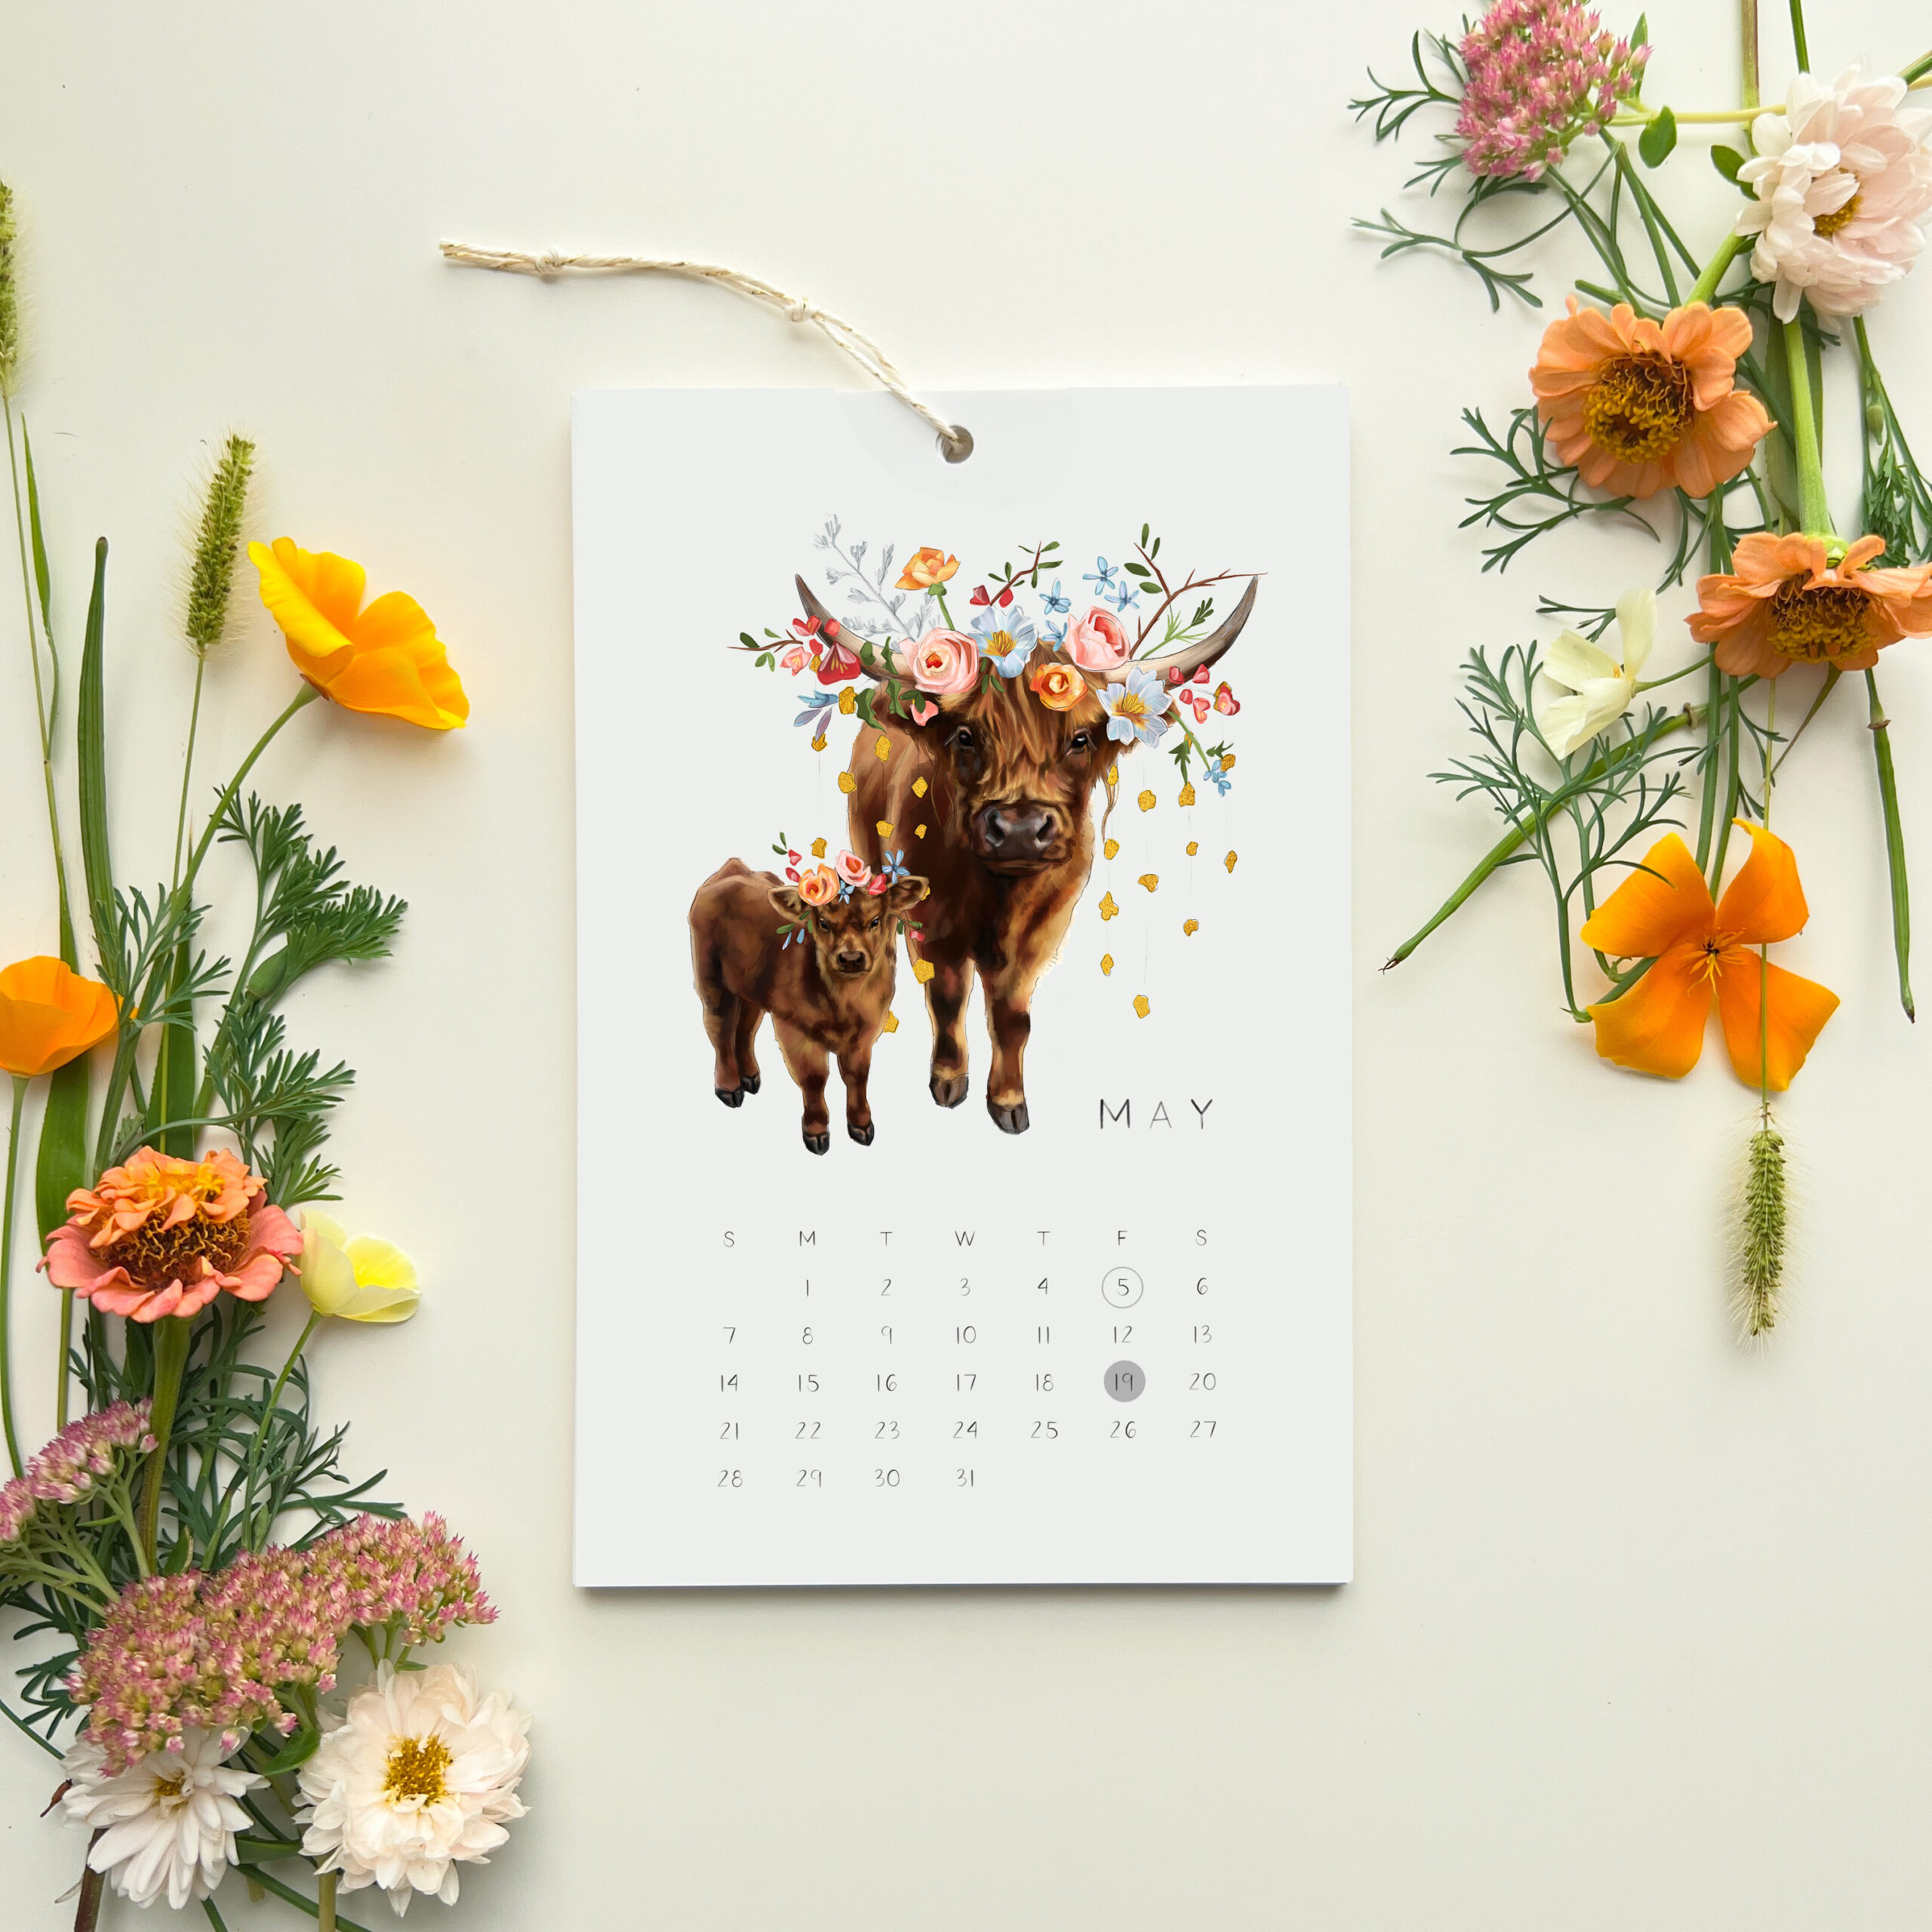 Highland Cow Calendar by Darcy Goedecke